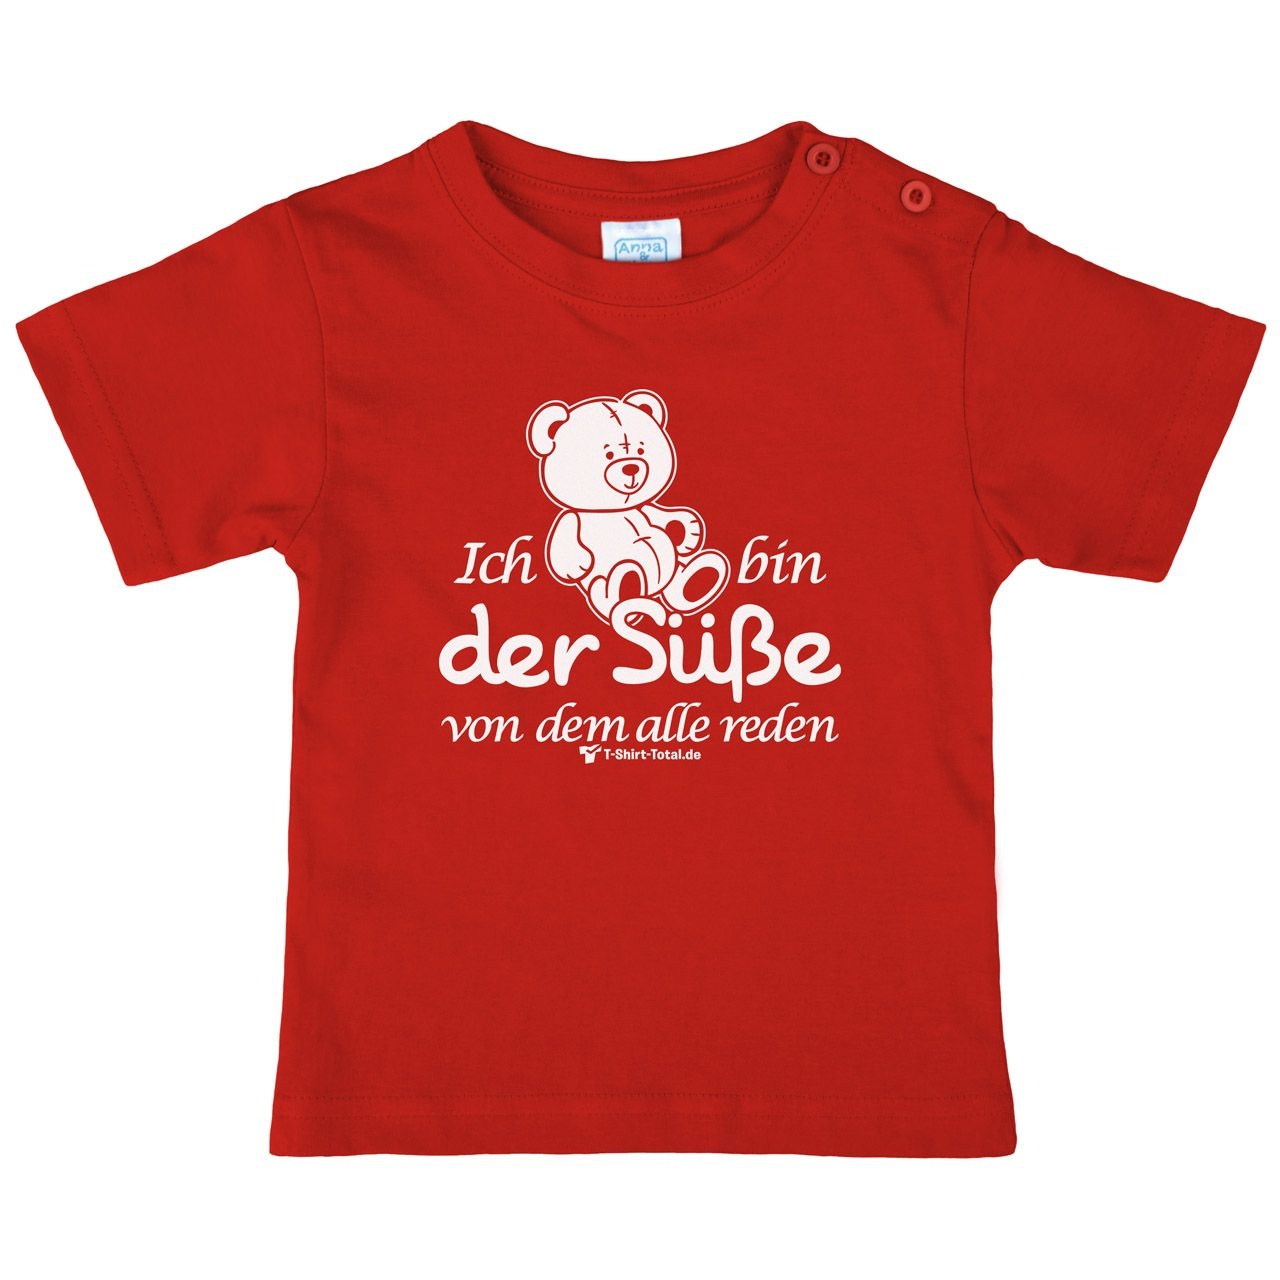 Der Süße Kinder T-Shirt rot 56 / 62